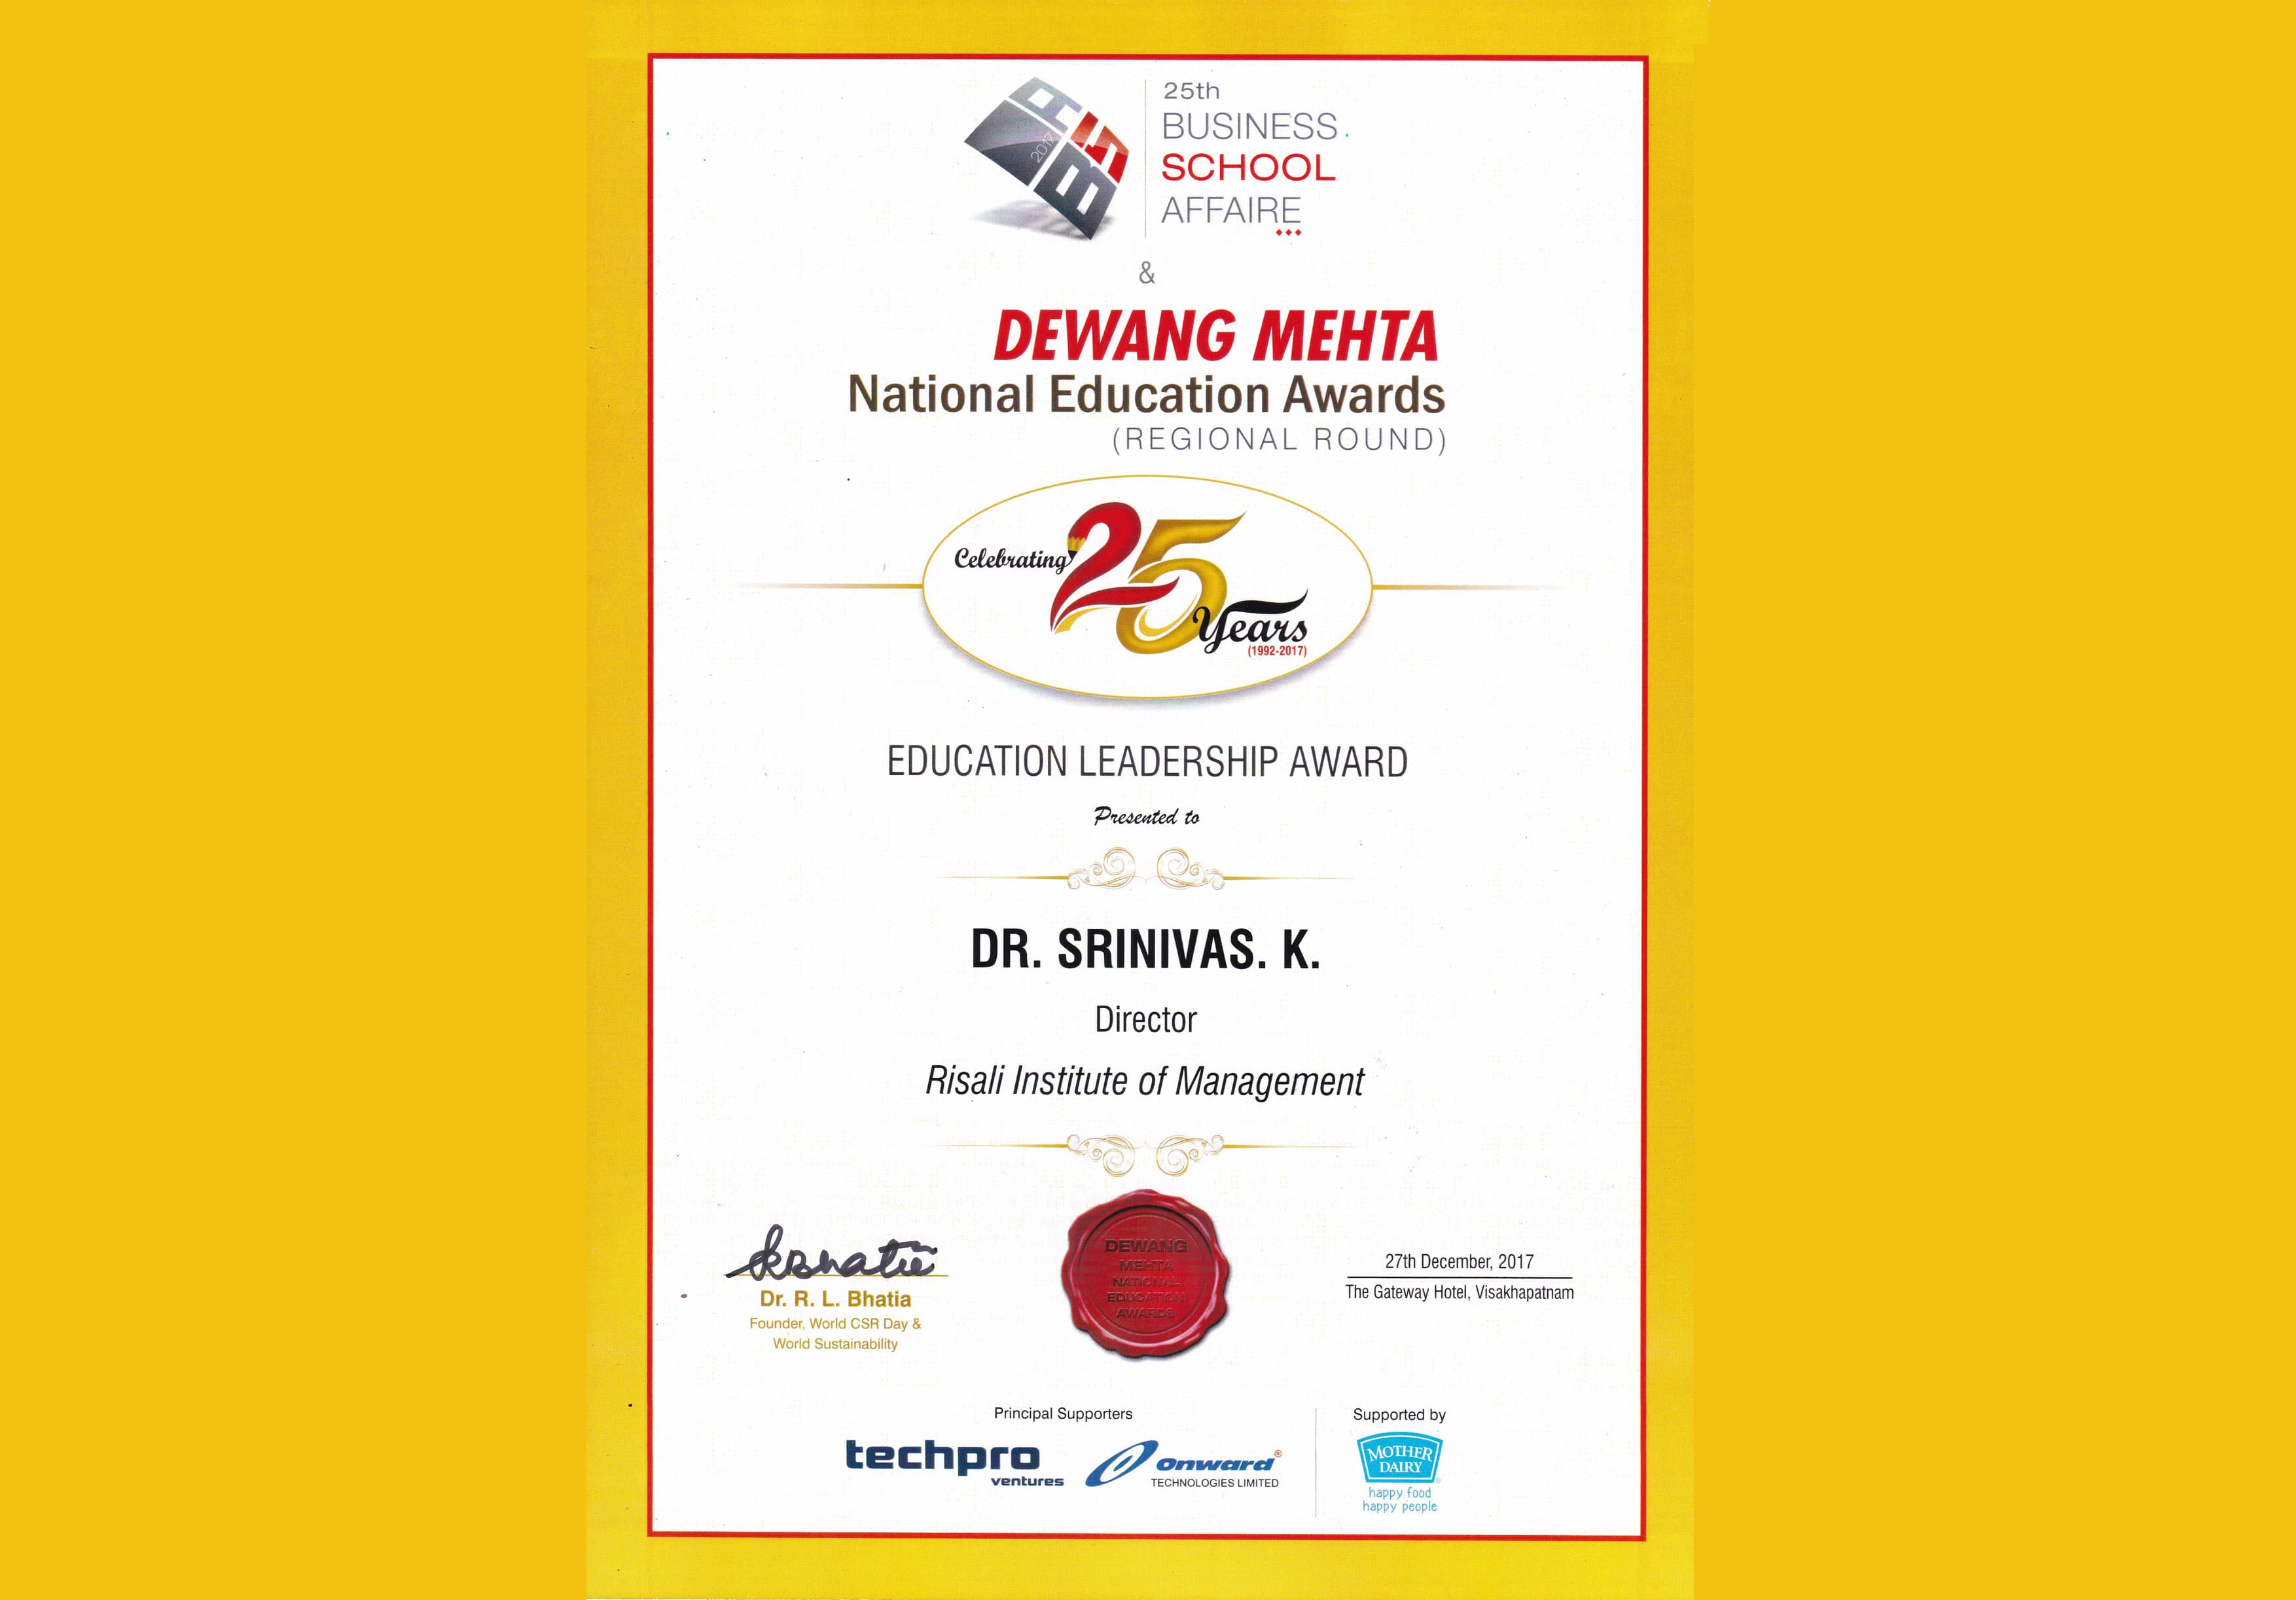 Dewang Mehta Education Leadership Award